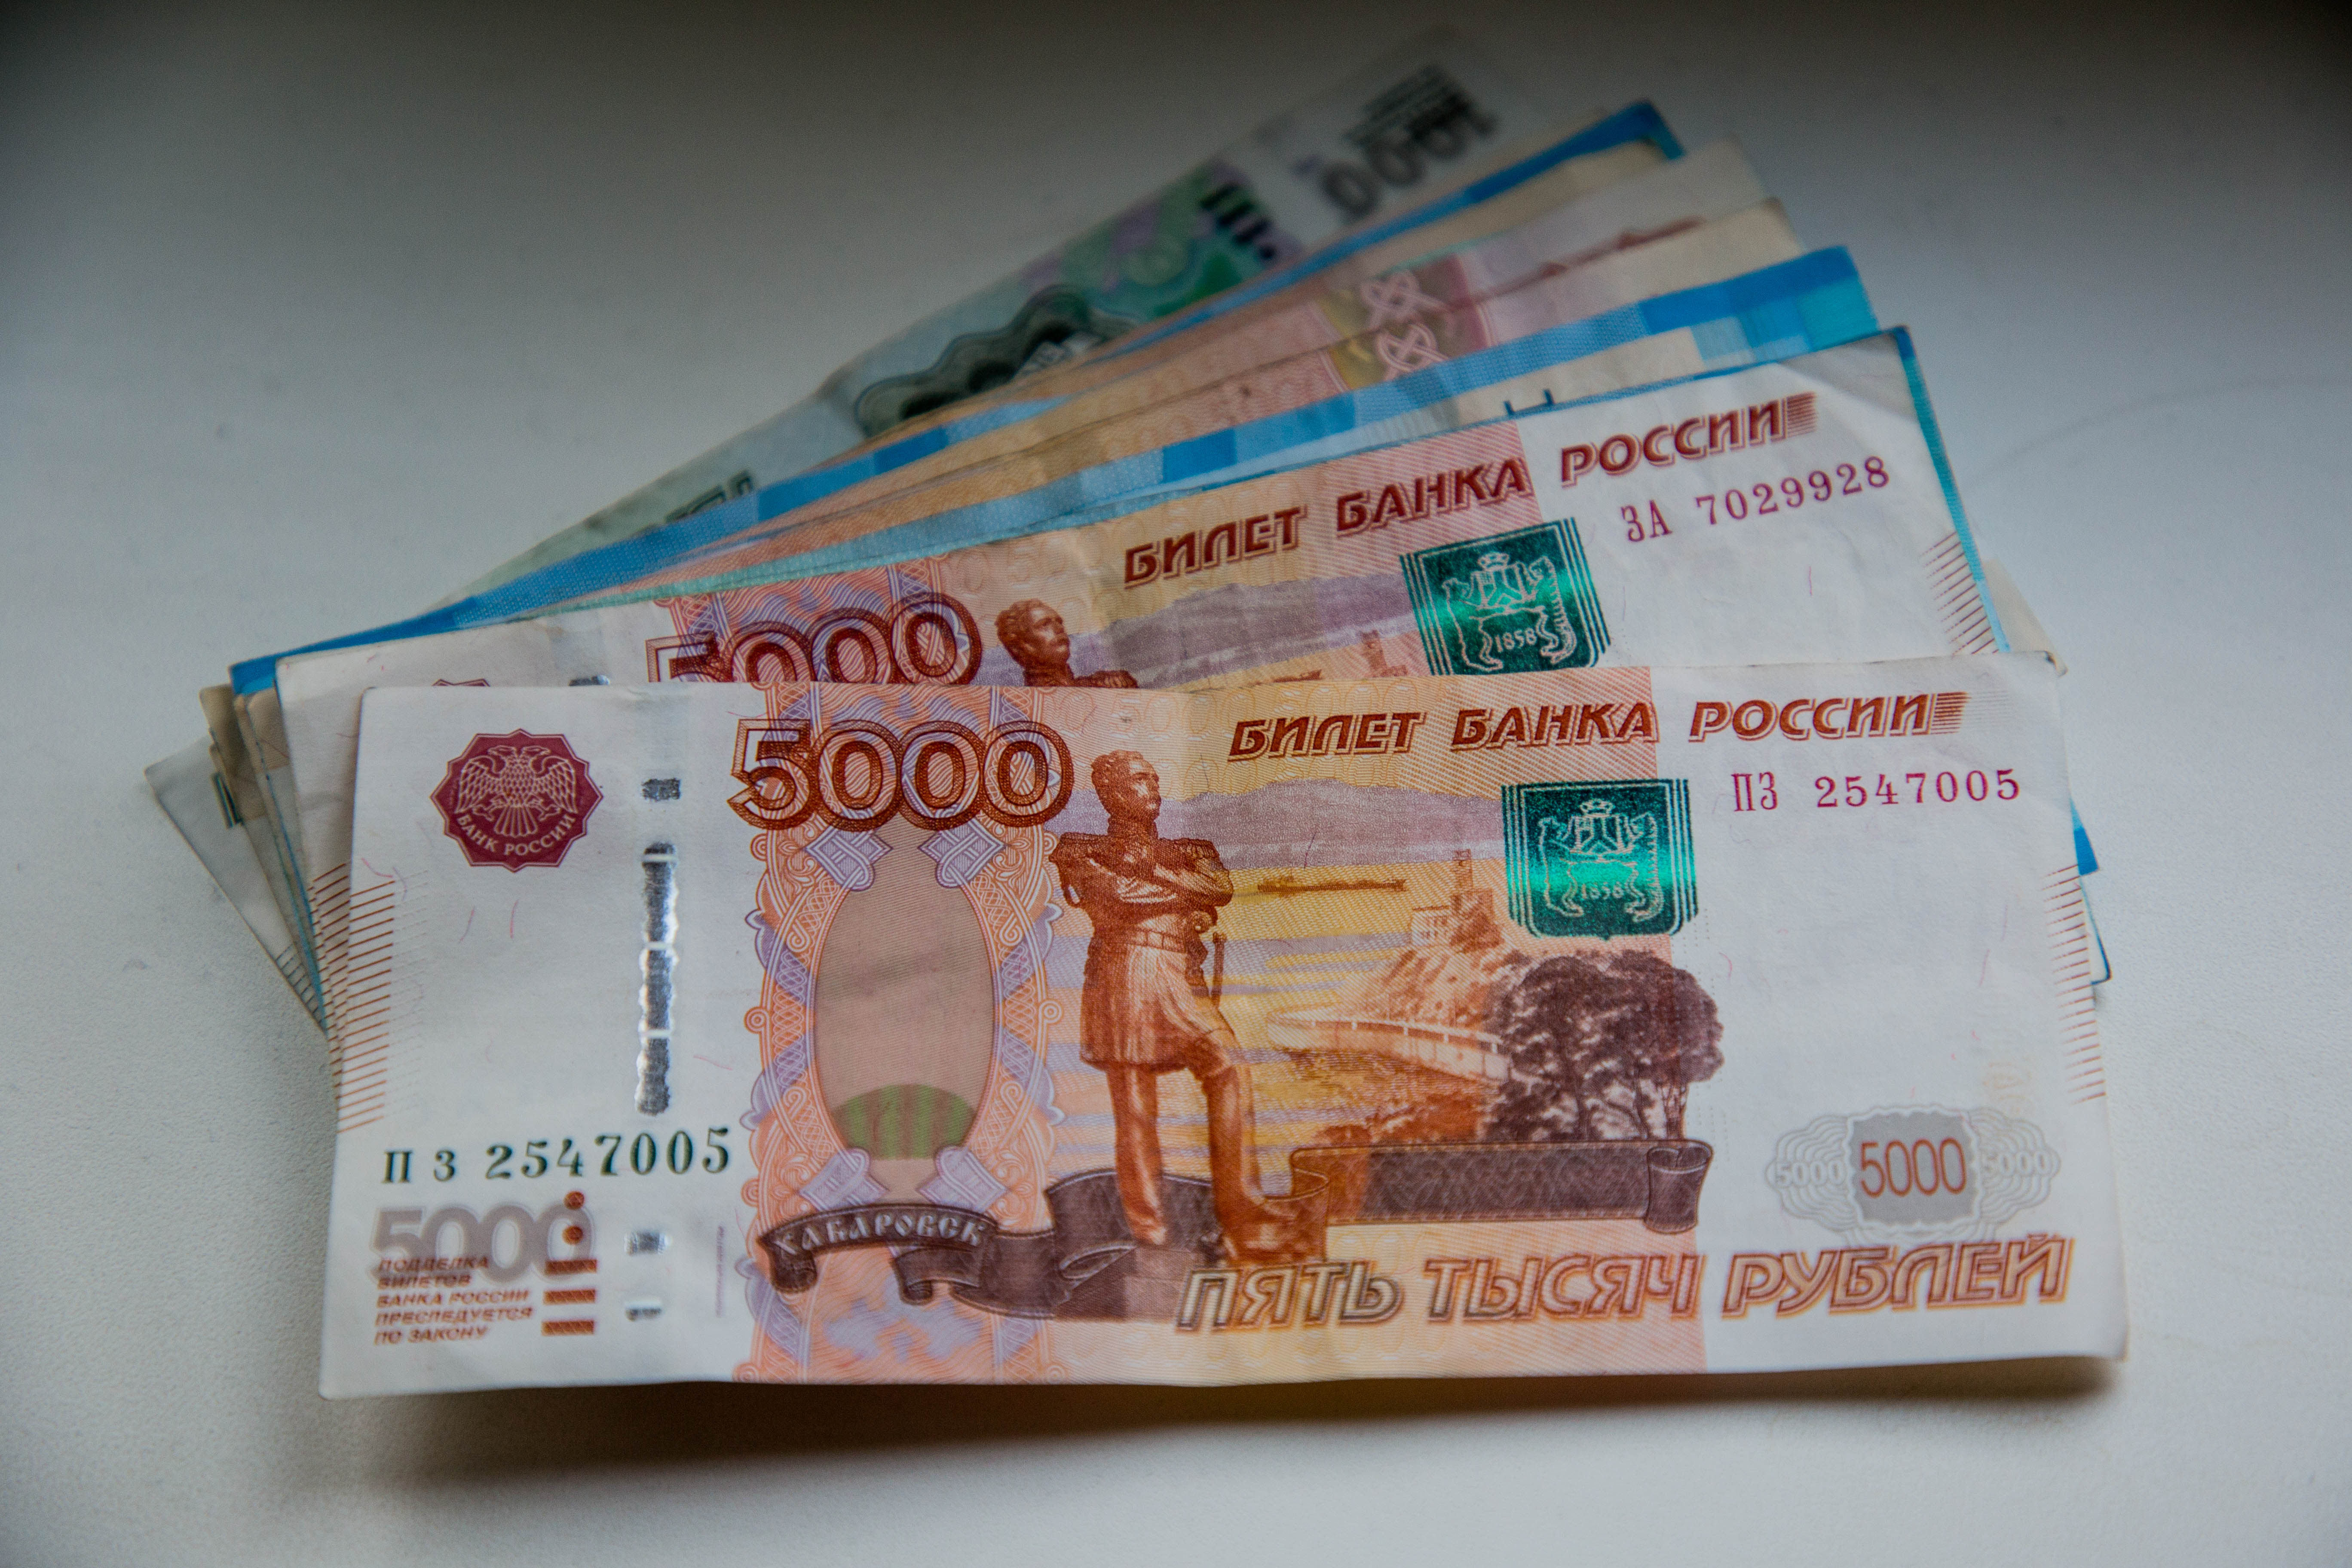 44 миллиона рублей. 500 Тыс рублей. Деньги зарплата. Тысяча рублей. 600 Тыс рублей.